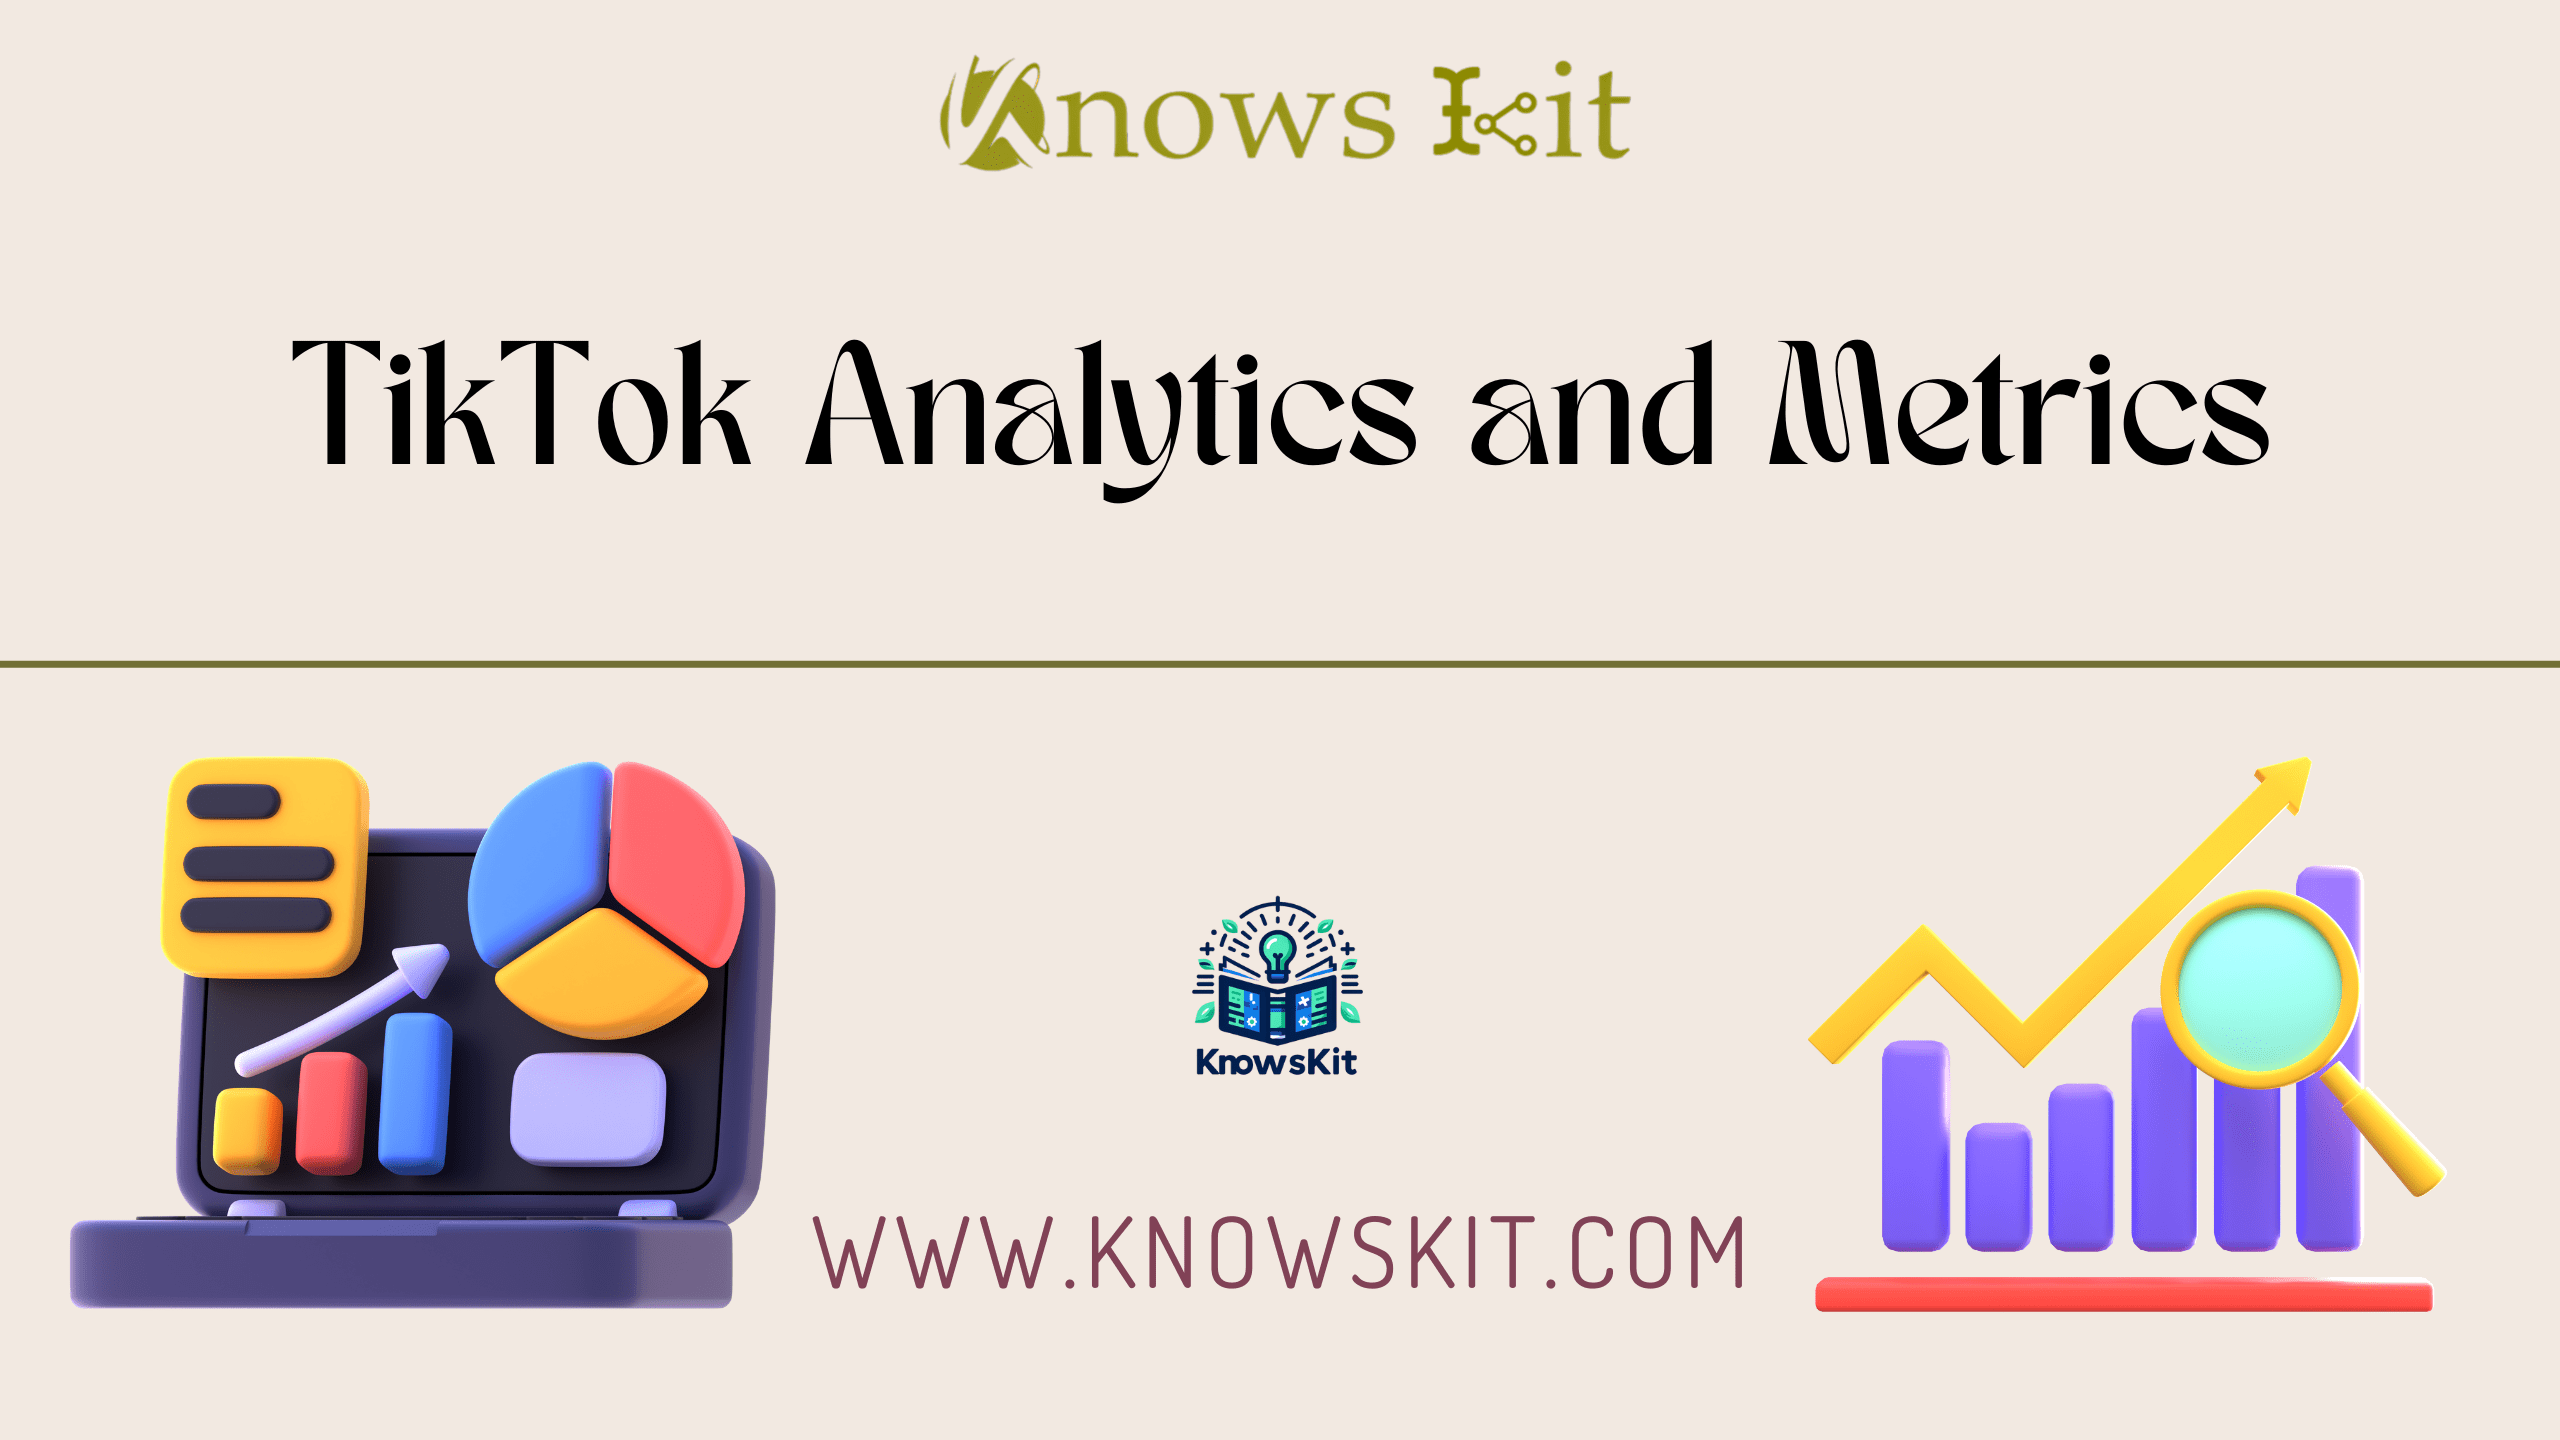 TikTok Analytics and Metrics